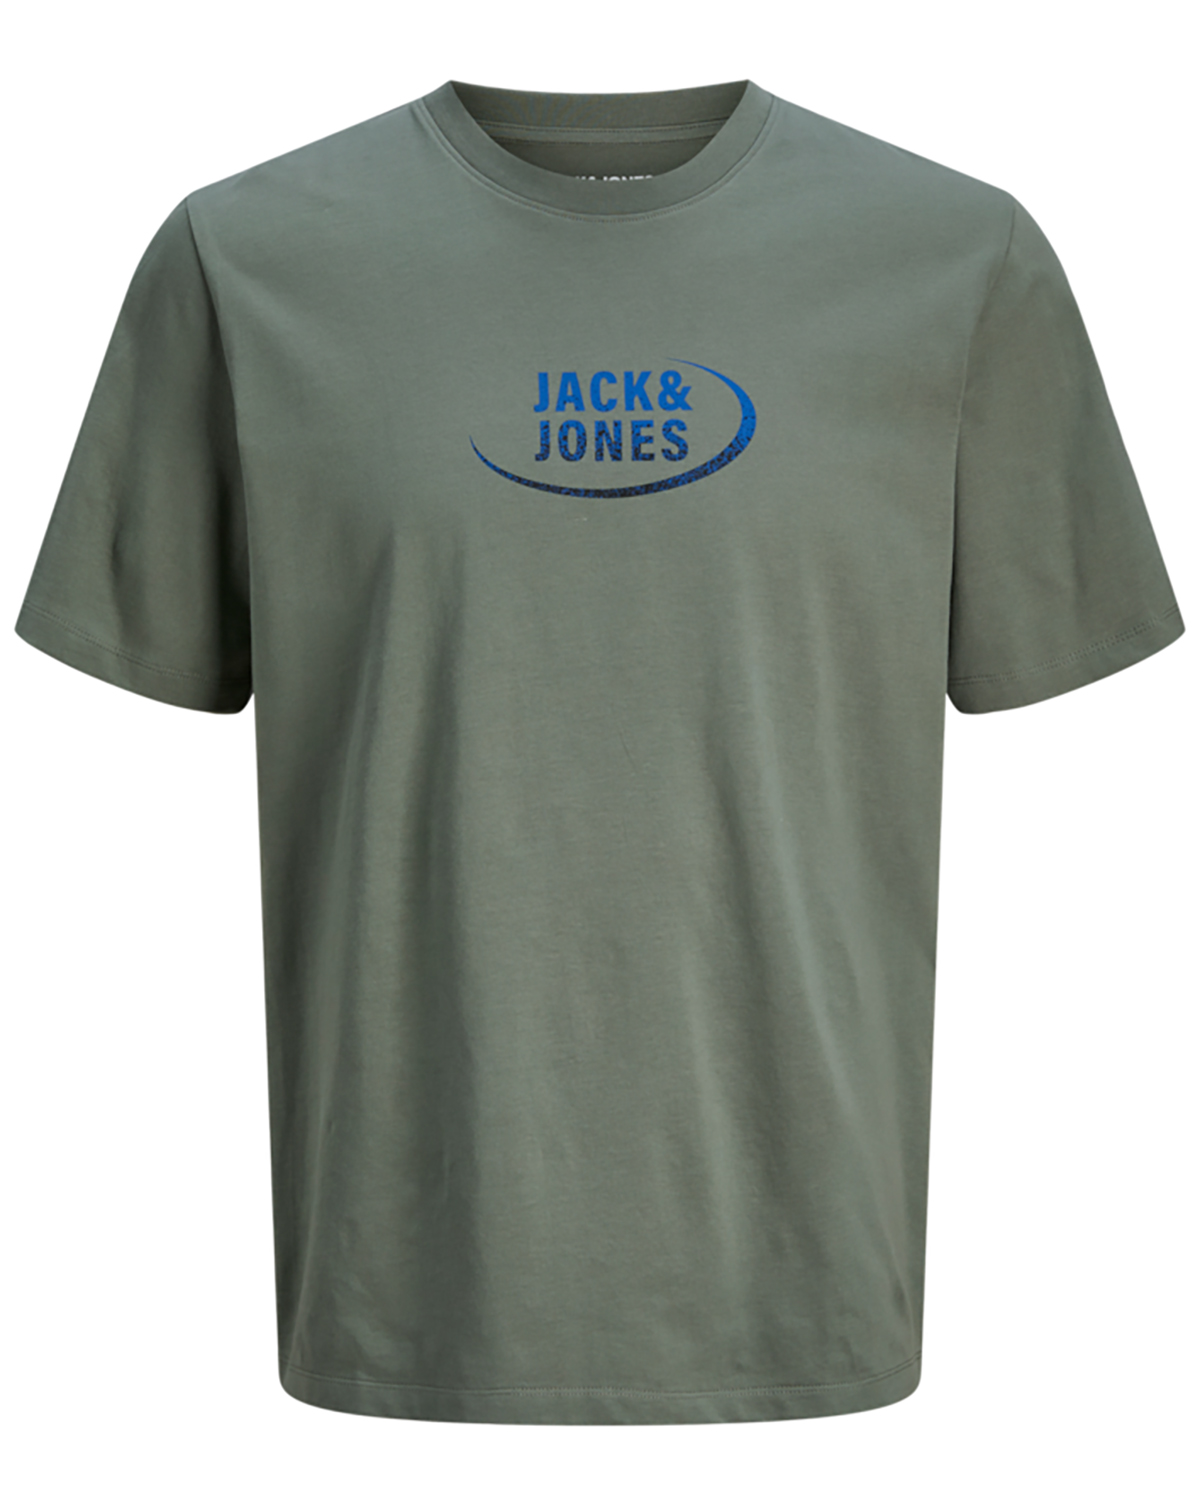 Se Jack & Jones t-shirt s/s, Gradient tee, army - 176,S+,S hos Umame.dk